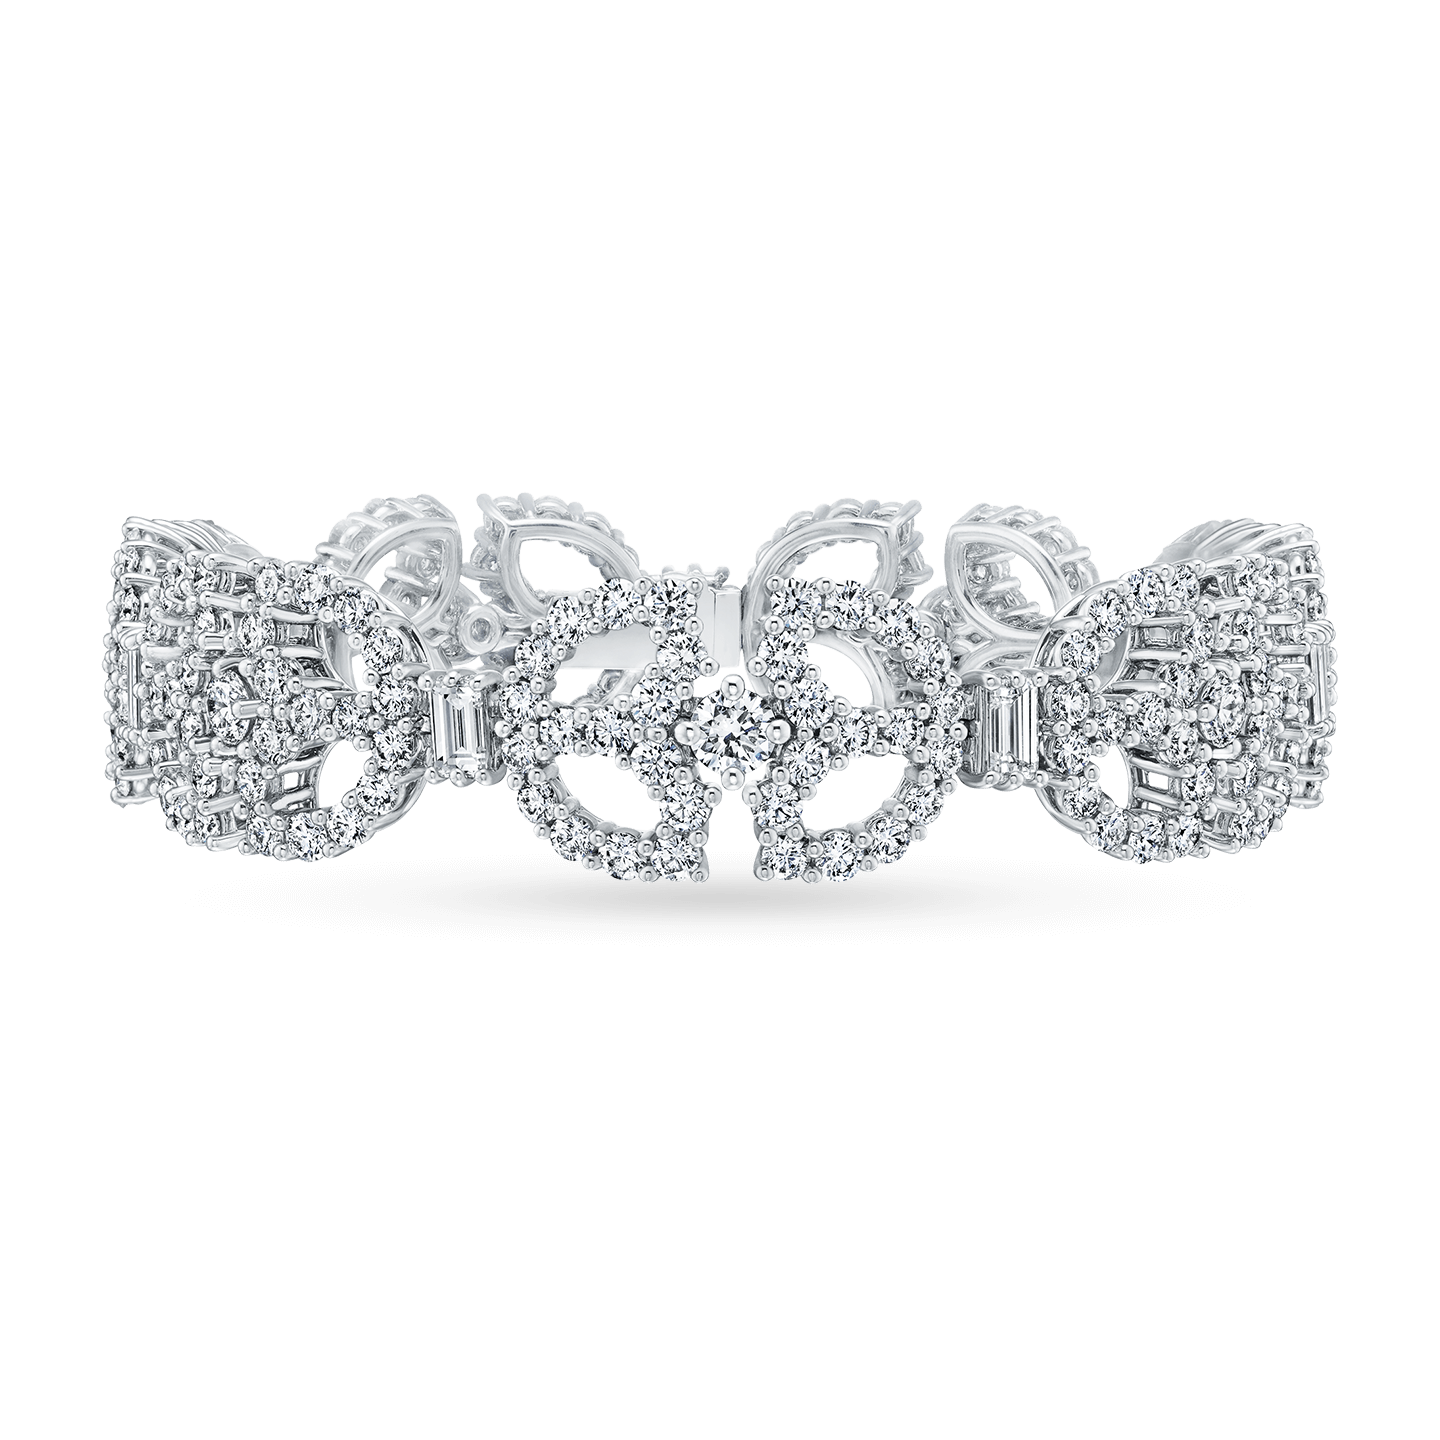 Art Deco钻石手链, 产品图1